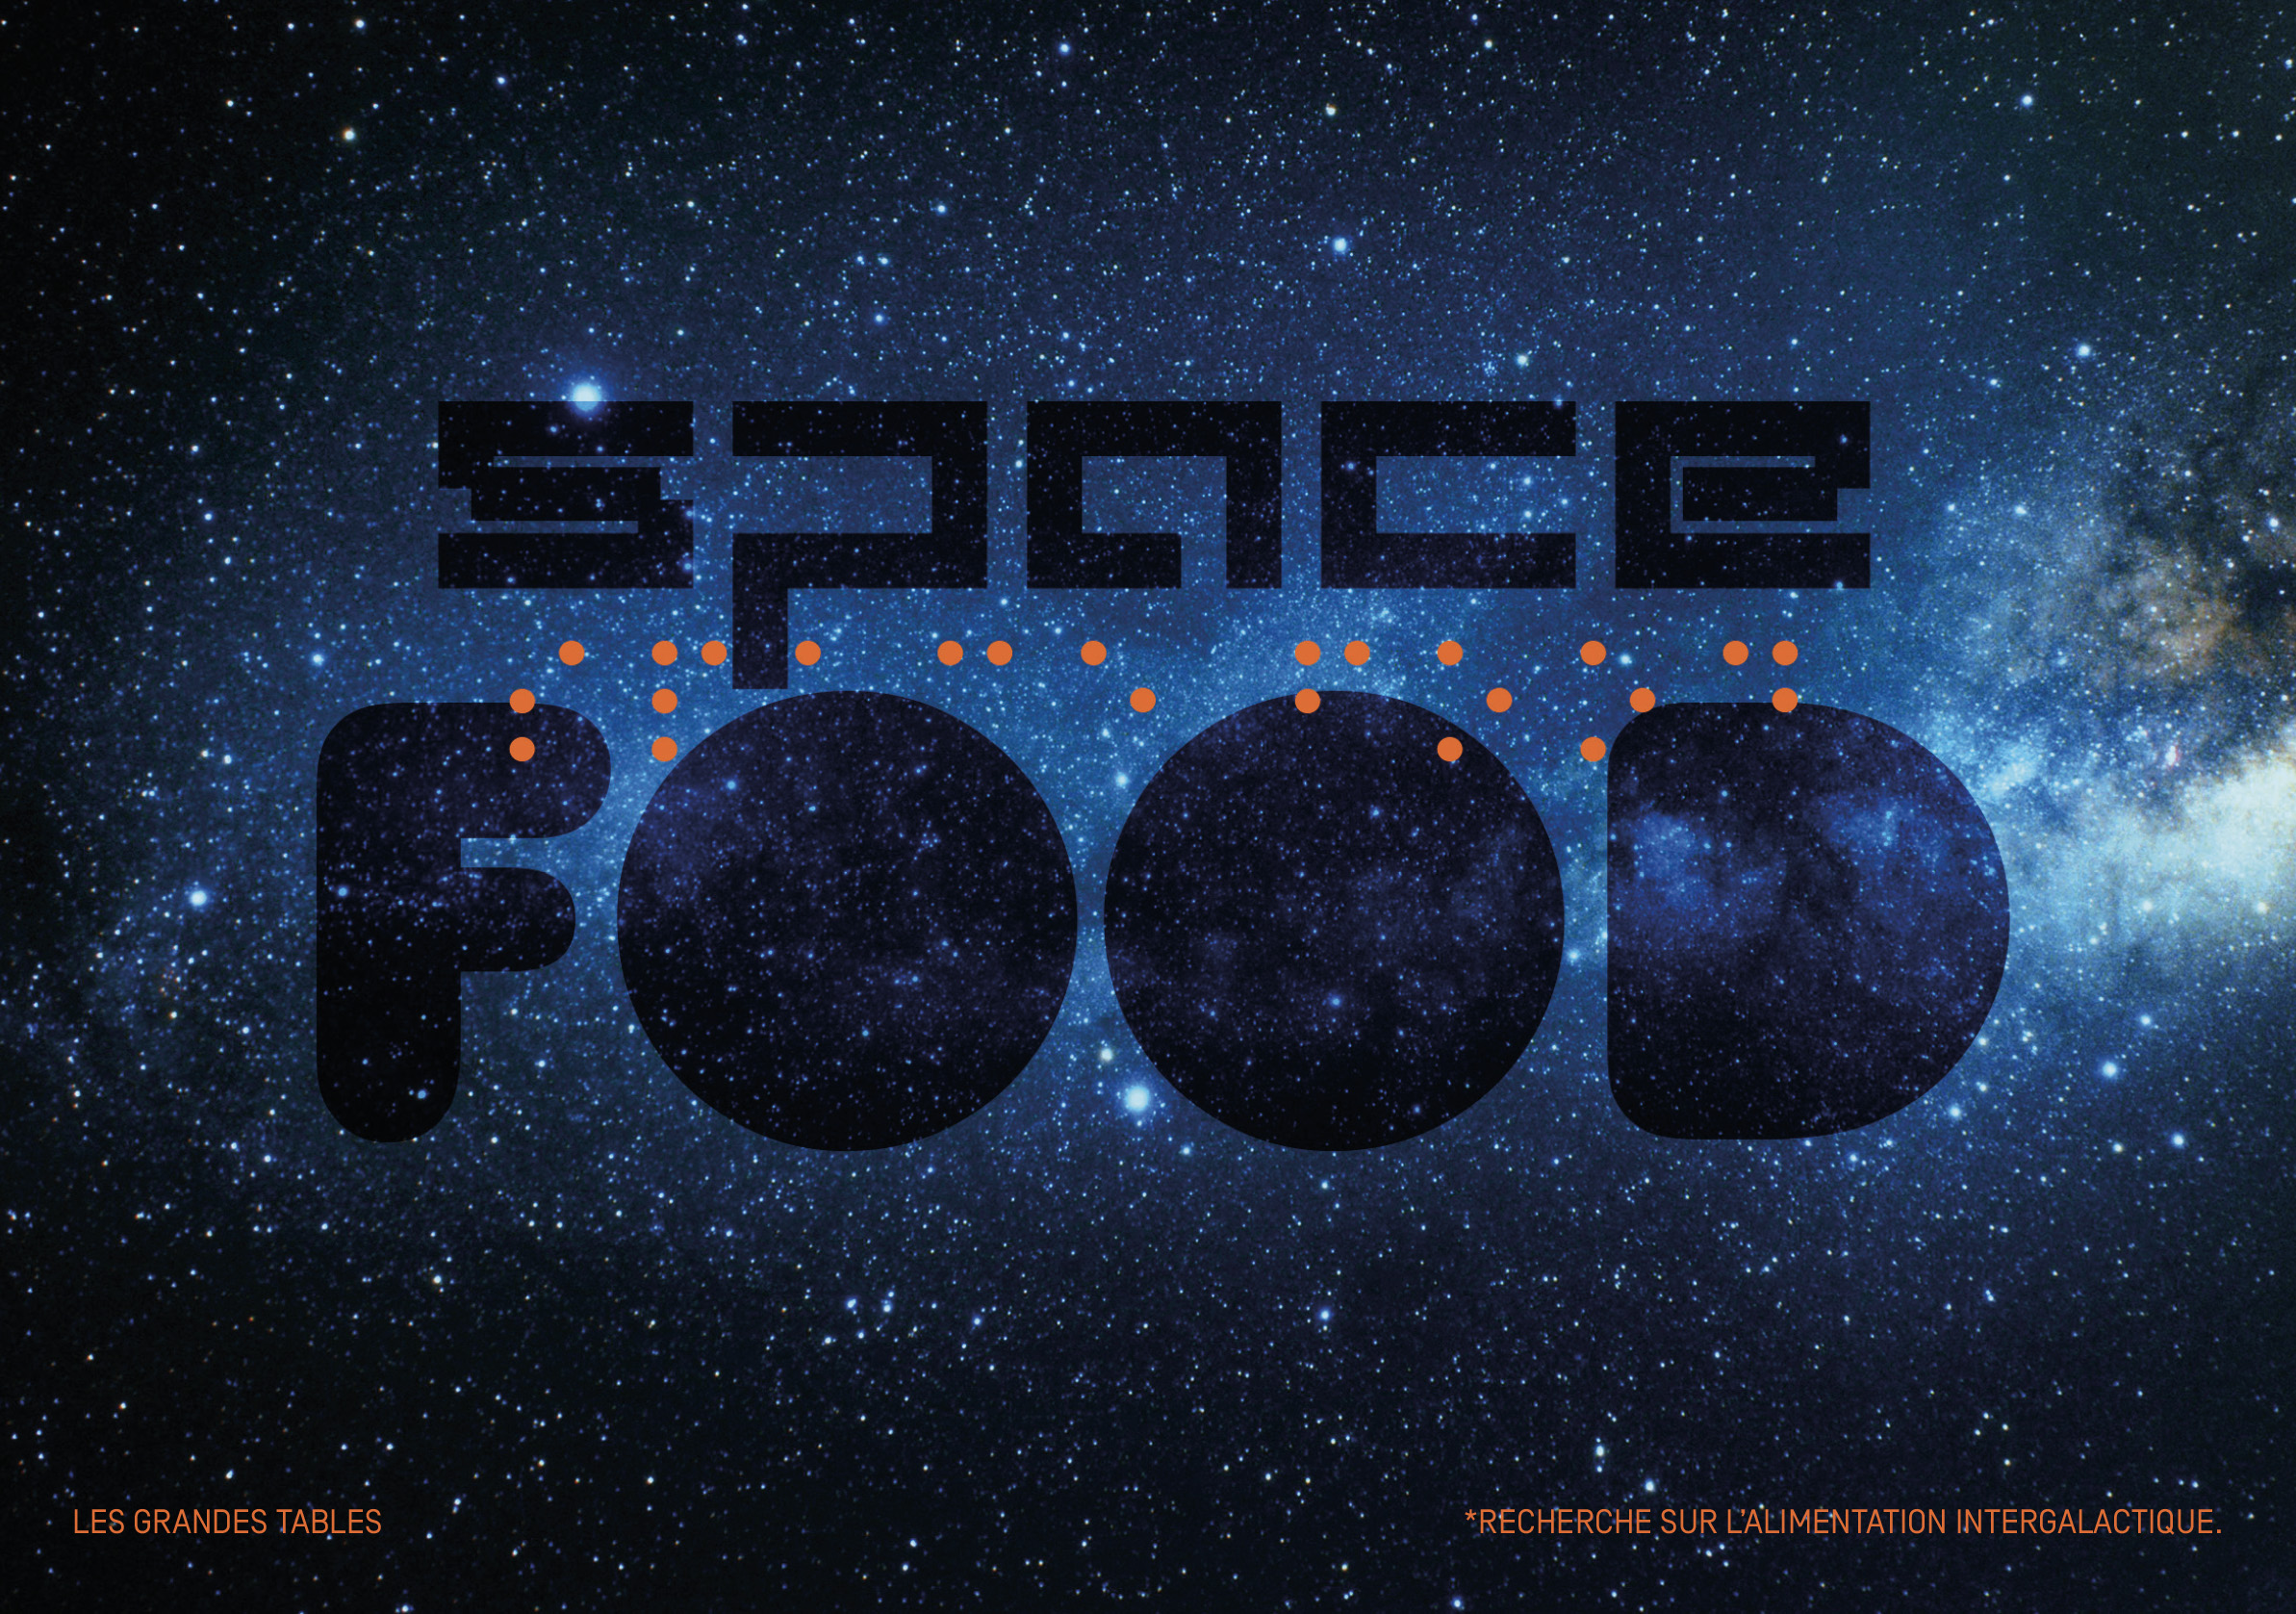 SPACE FOOD